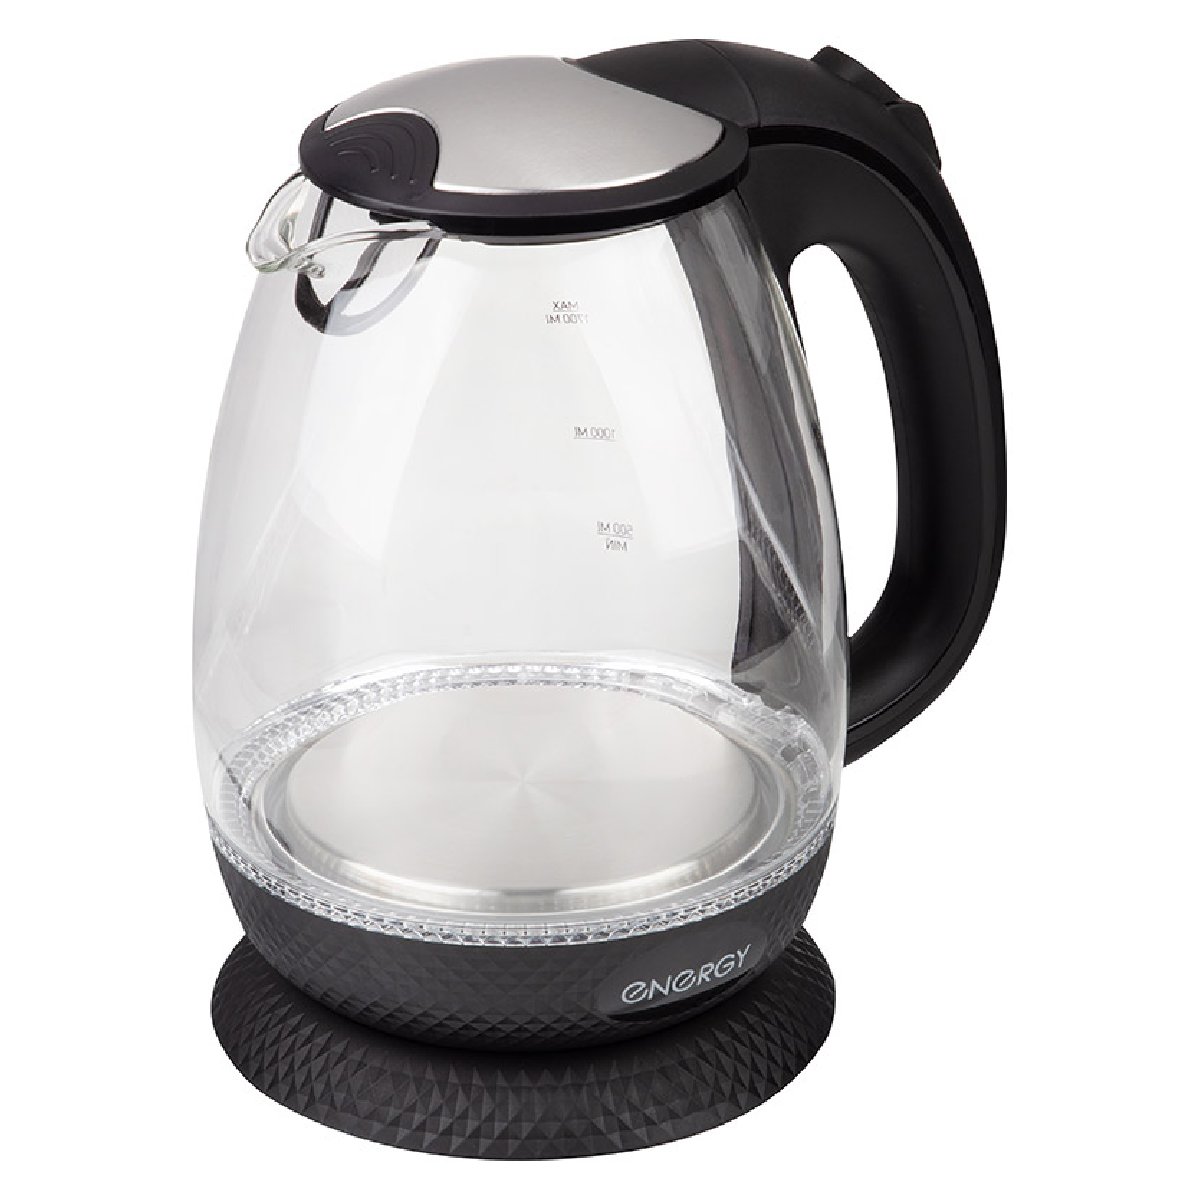 Чайник ENERGY E-250 (1,7 л) стекло, пластик цвет черный (007122)Купить